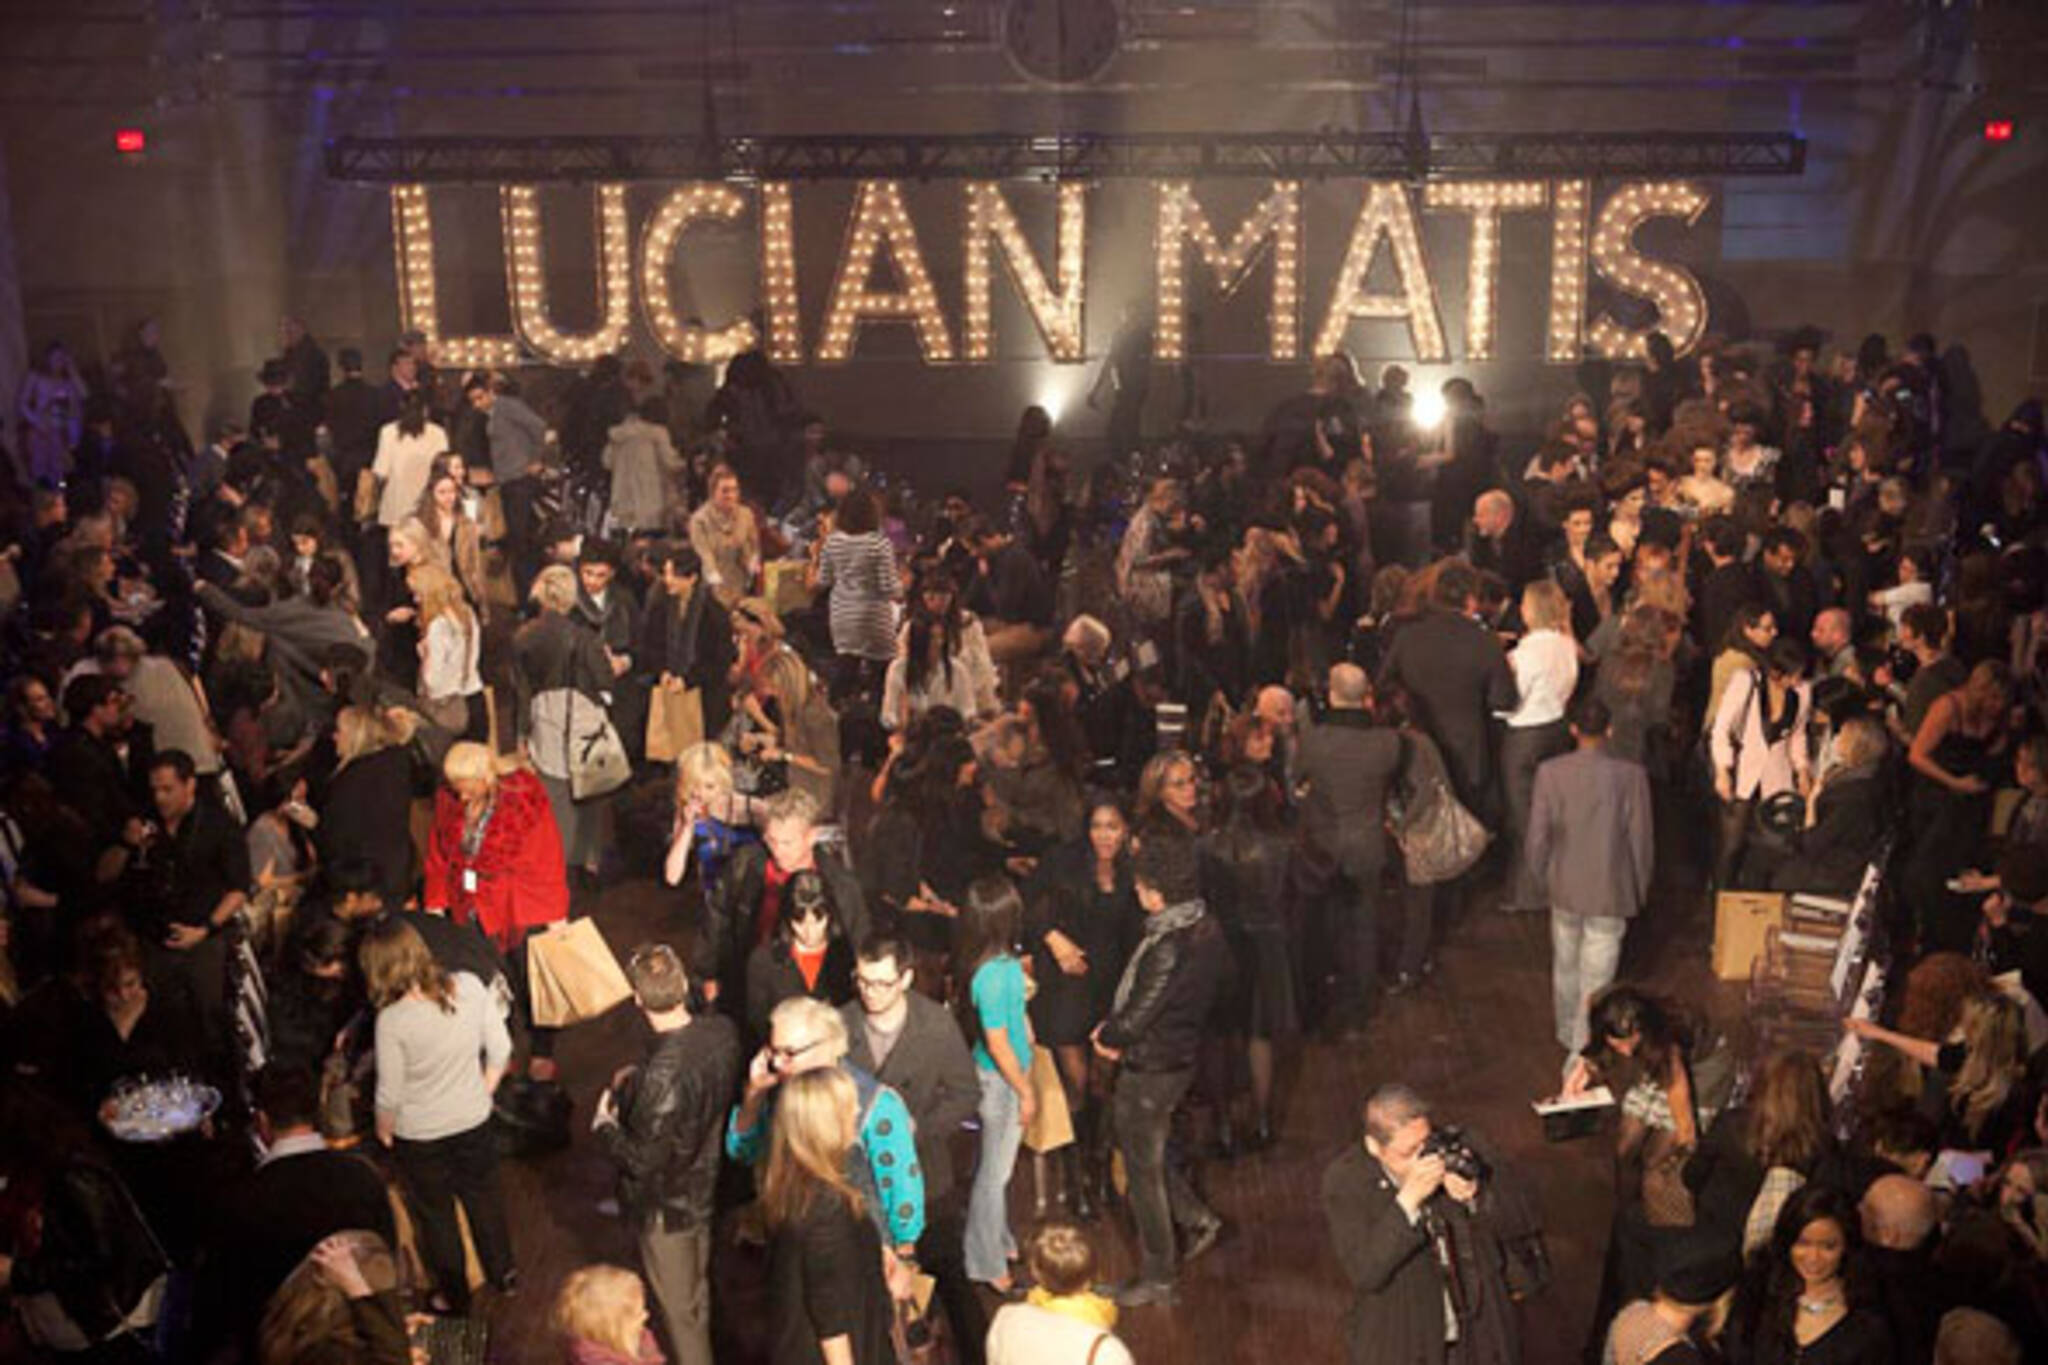 Lucian Matis